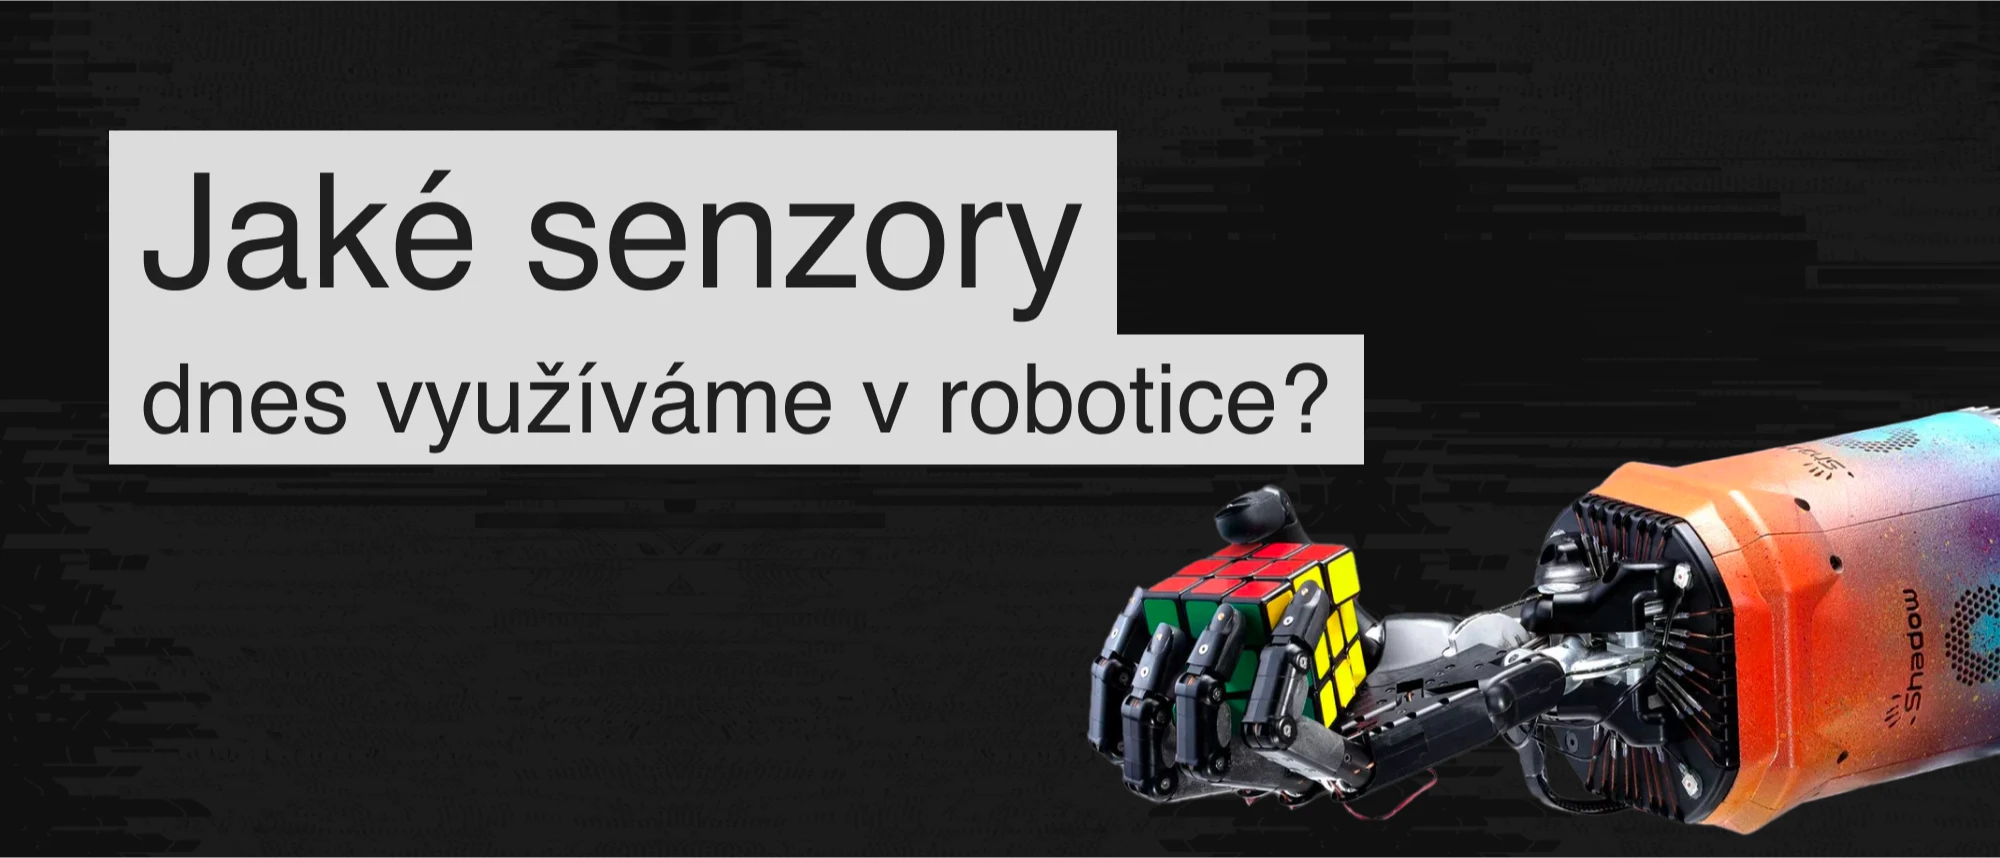 Typy senzorů v robotech